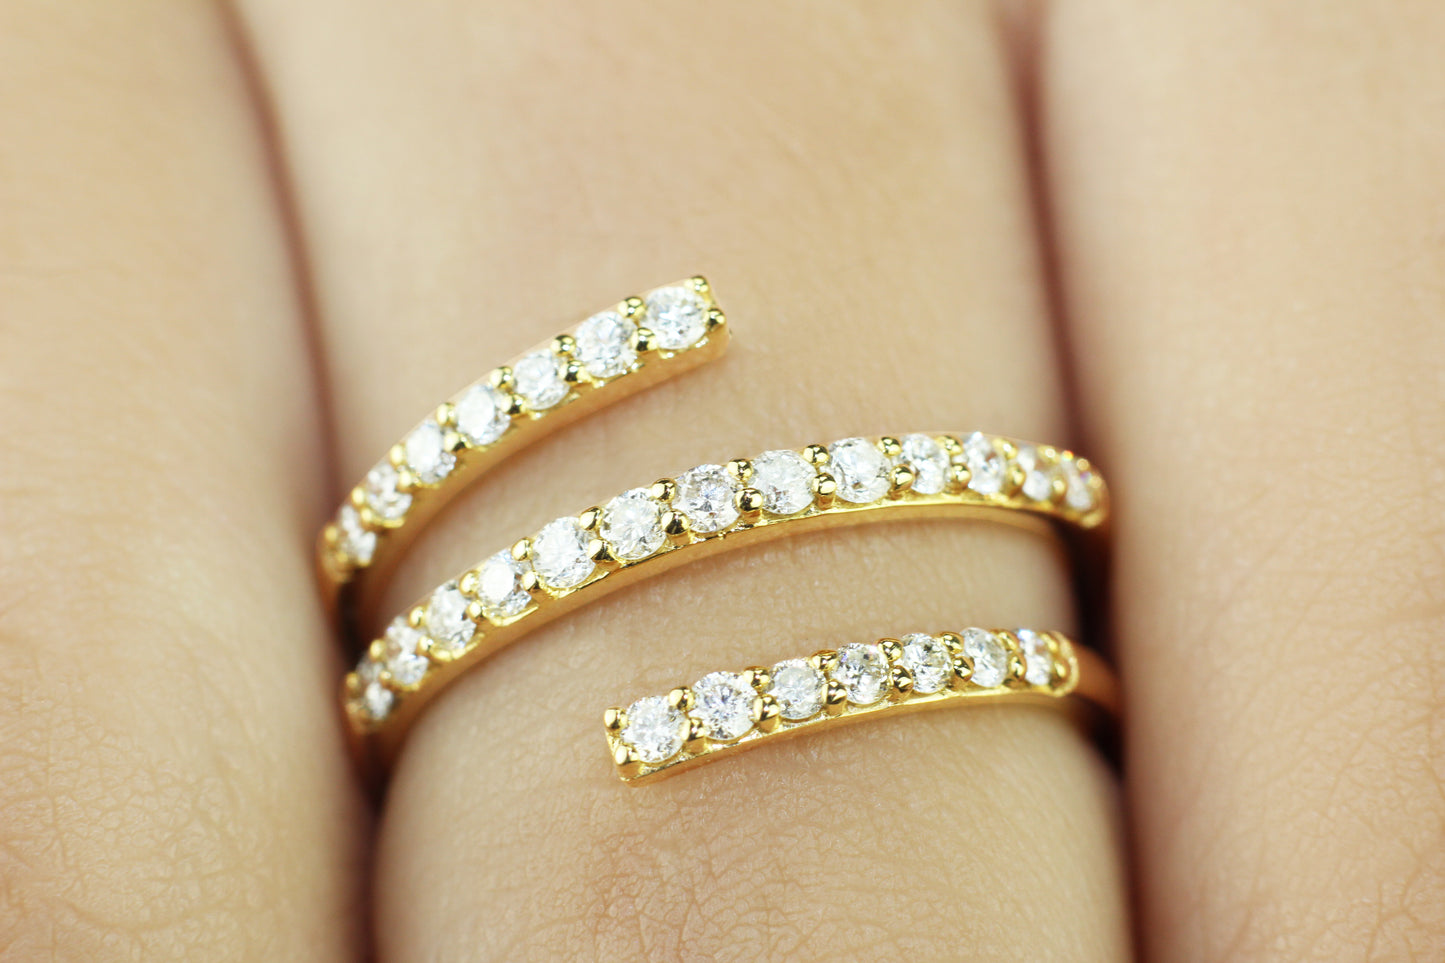 Belantina 1/2 Carat Diamond Spiral Wrap Ring In 14k Solid Gold